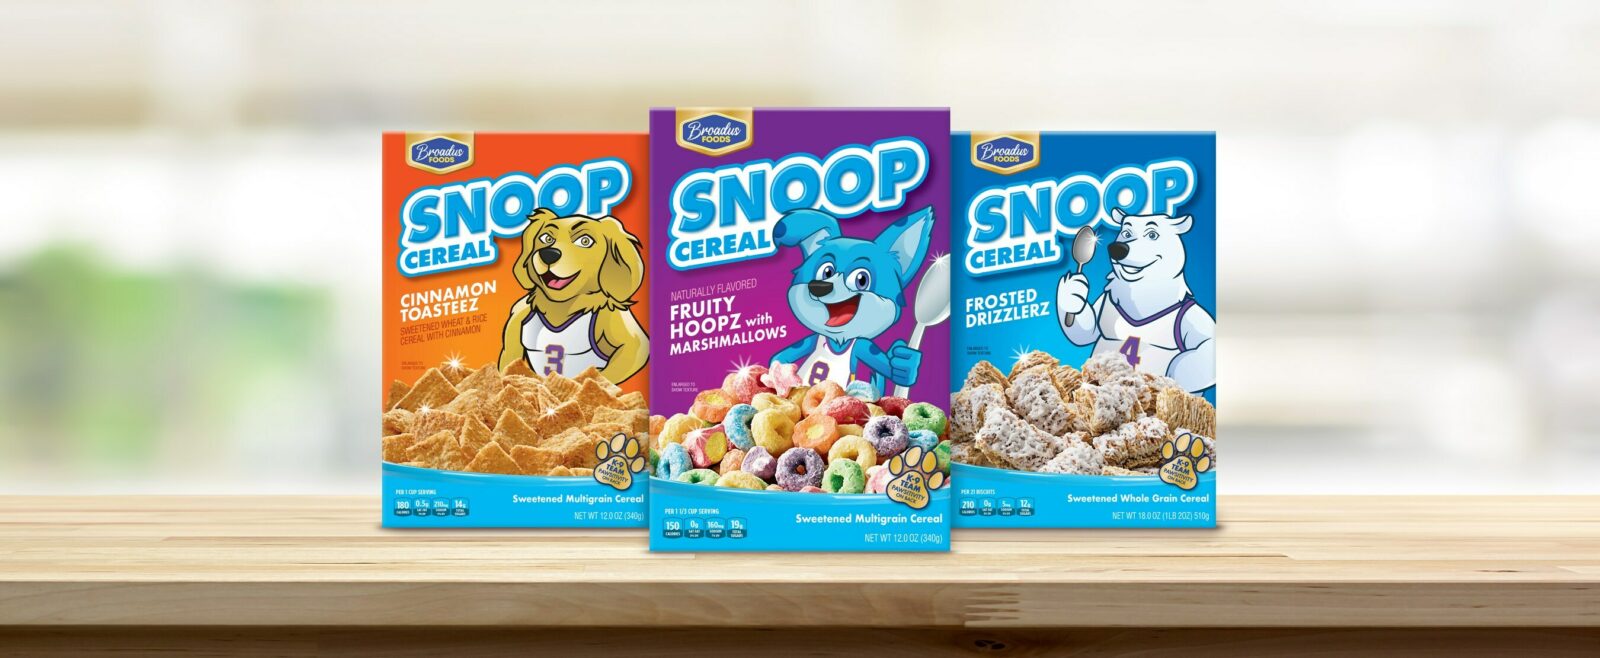 Snoop Cereal - Varieties